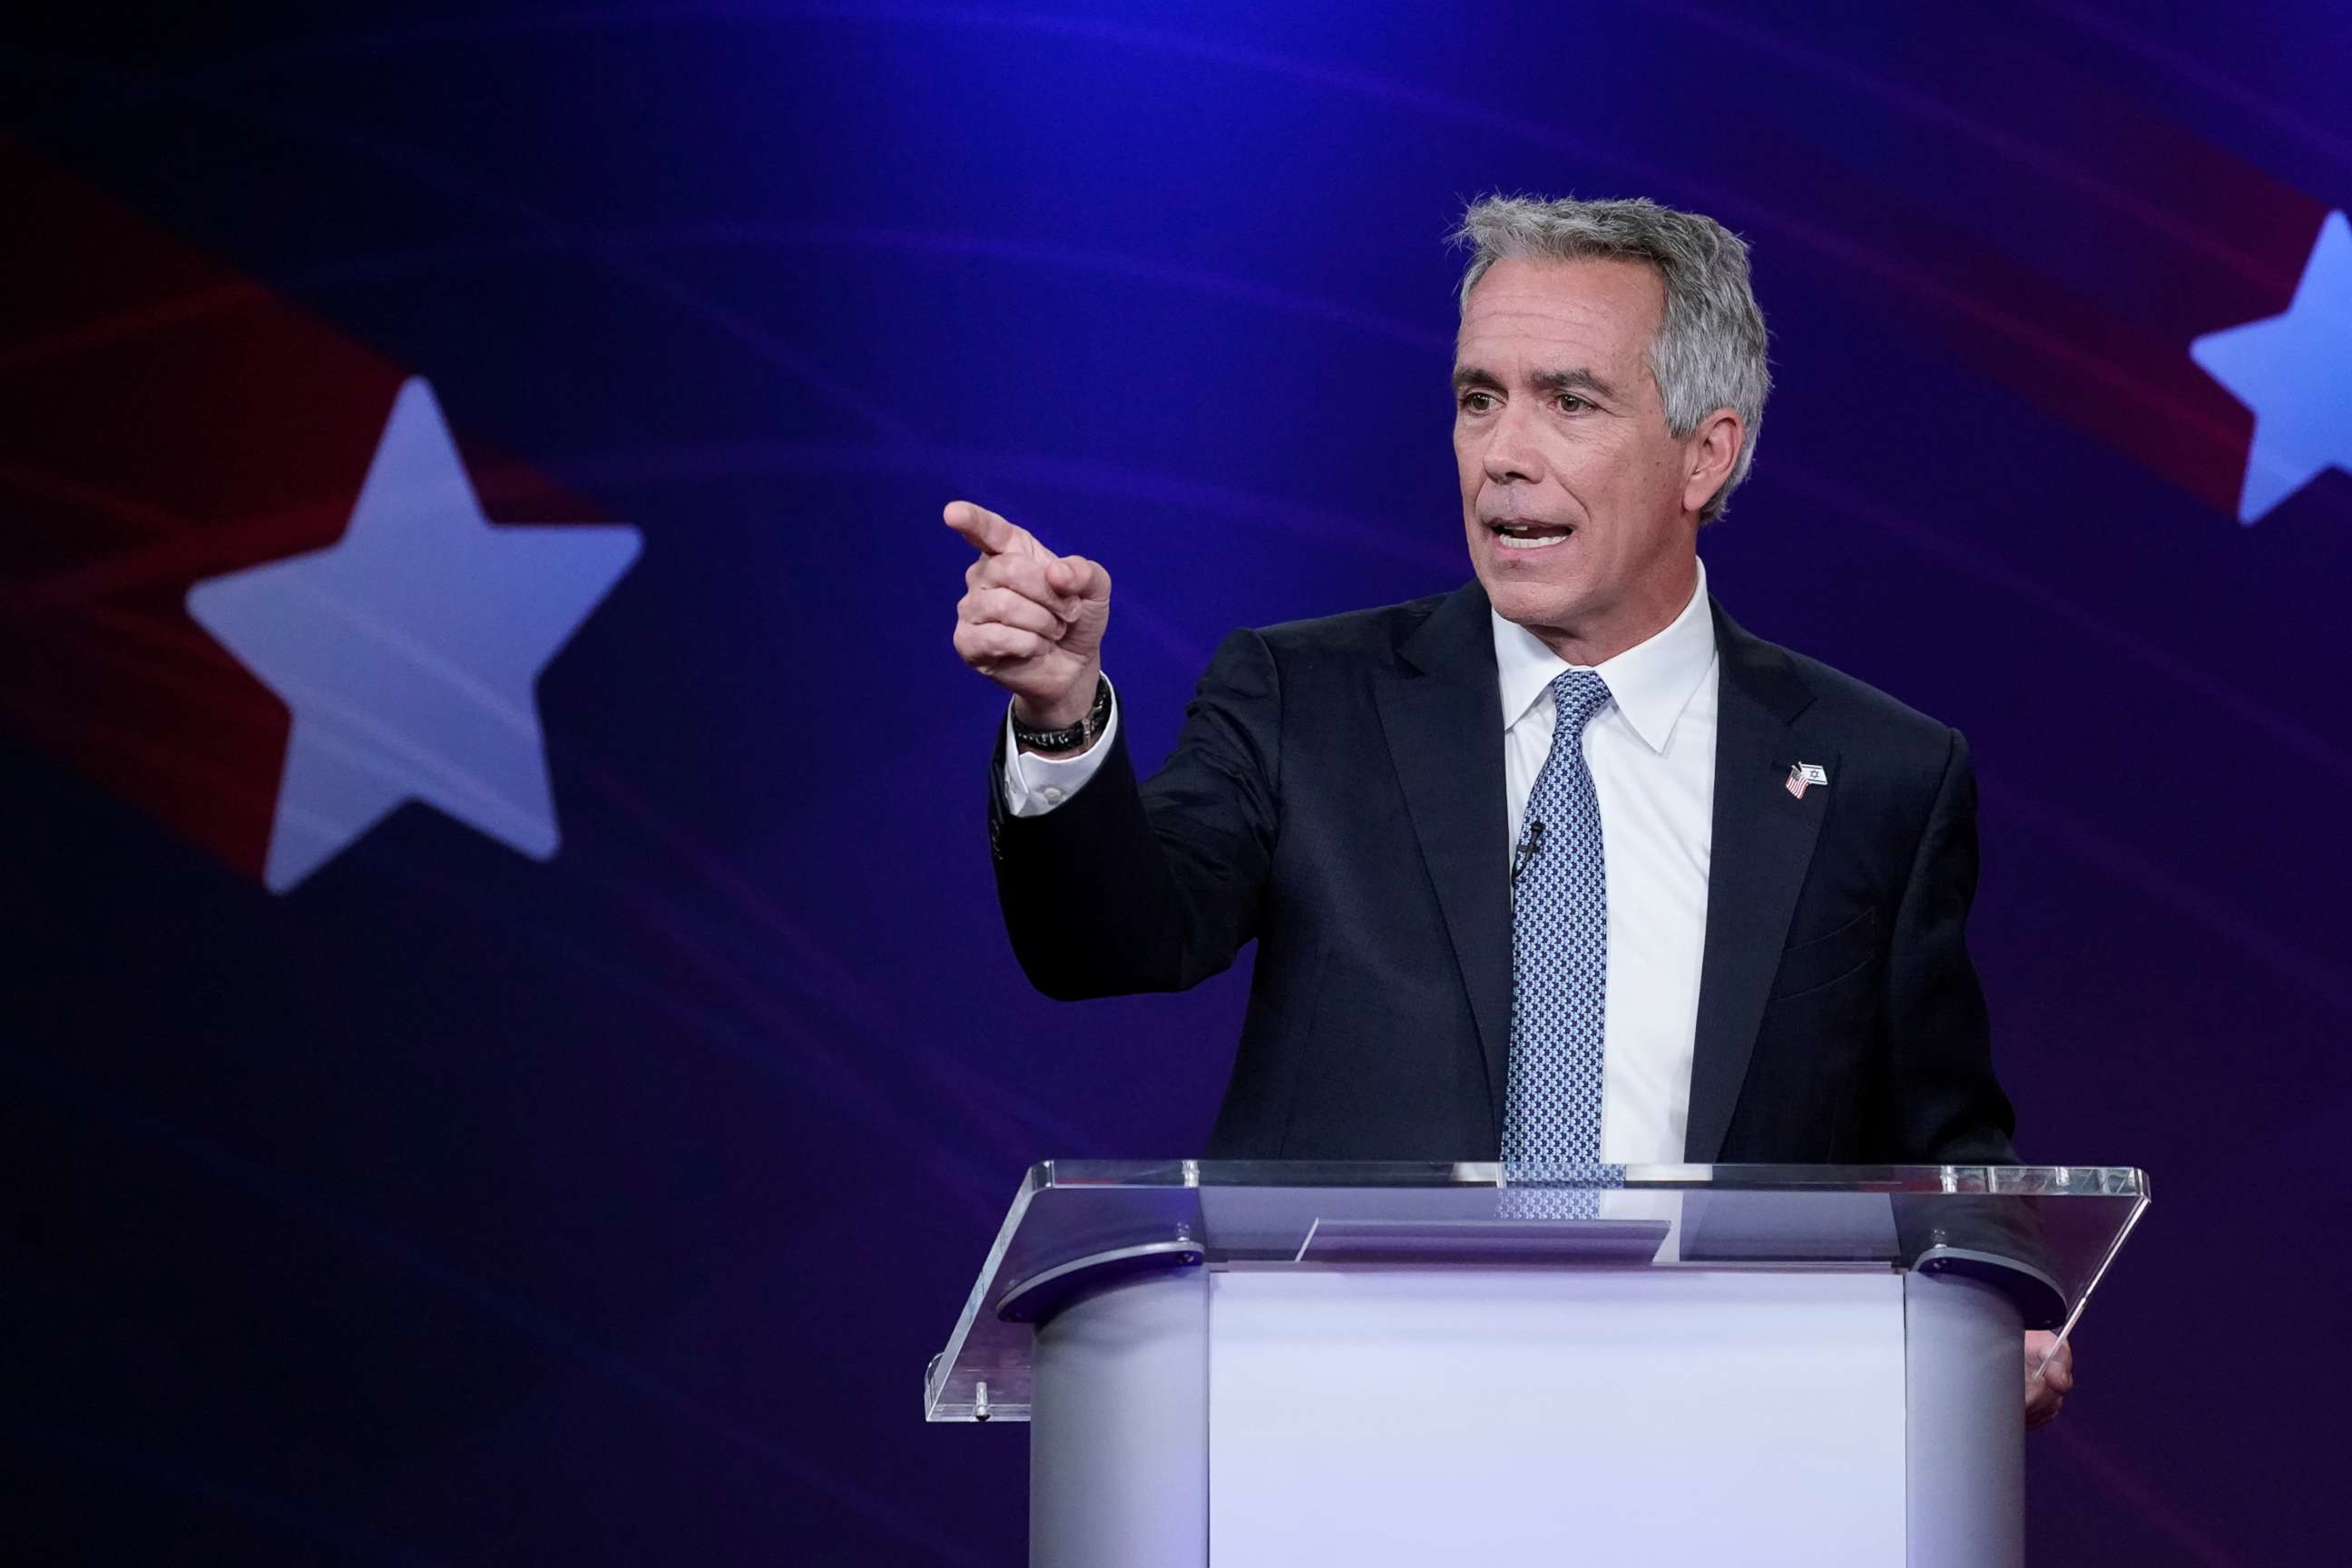 PHOTO: Joe Walsh speaks at a debate in N.Y., Sept. 24, 2019.